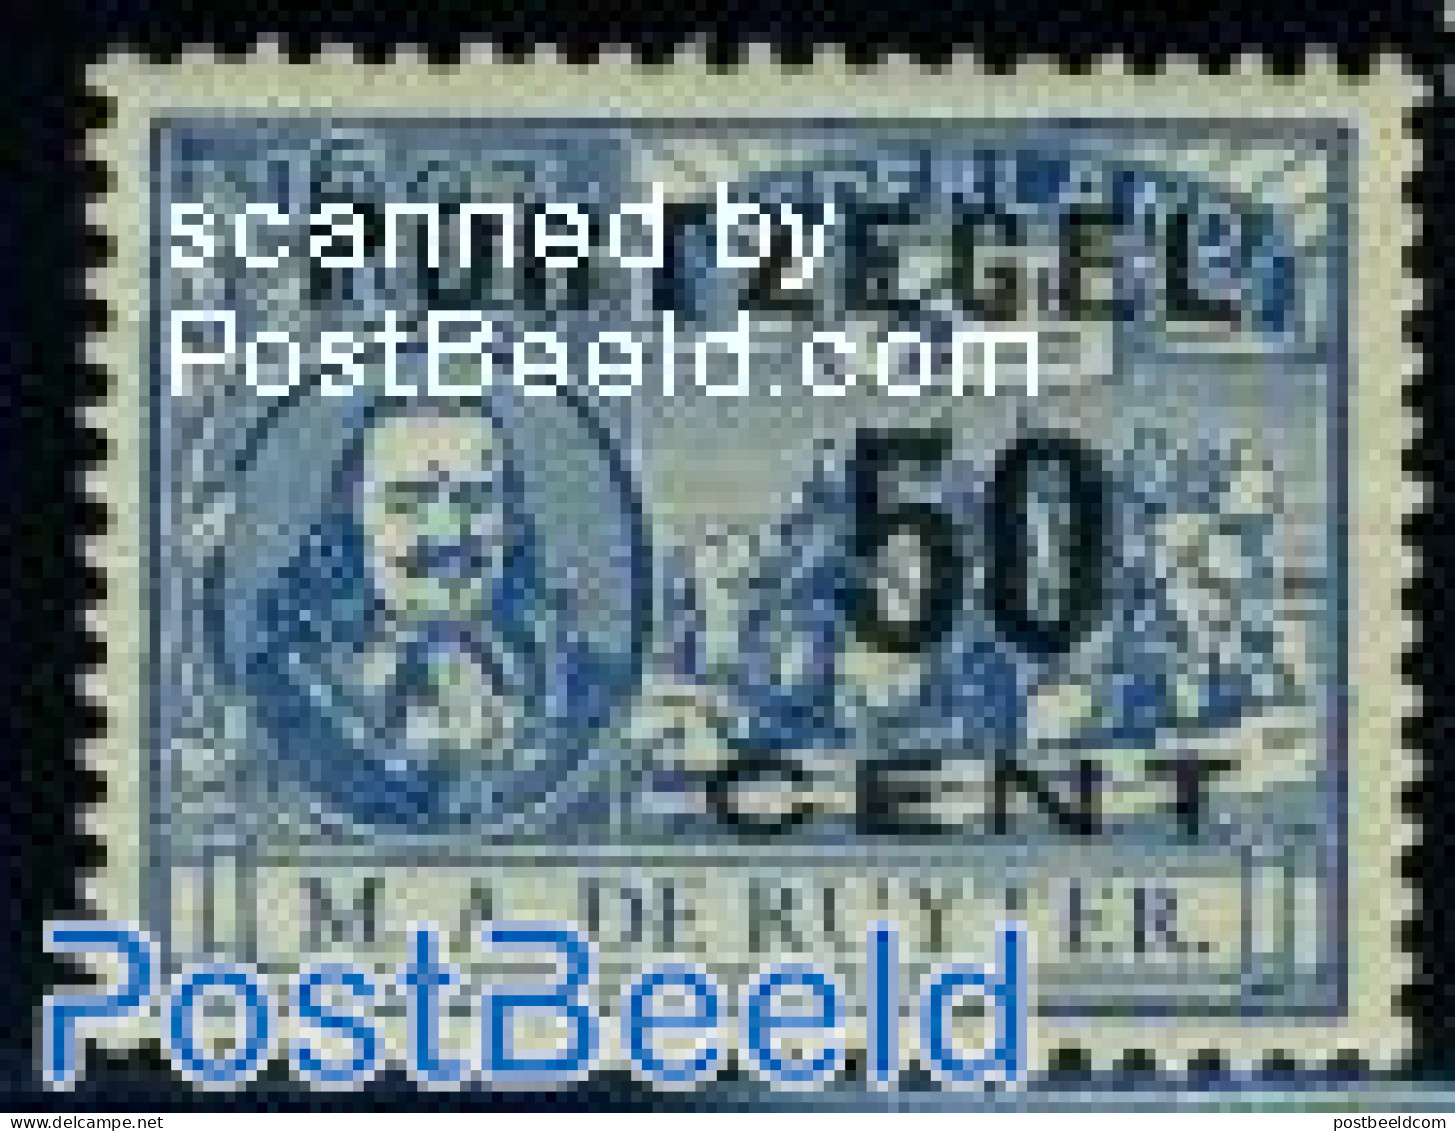 Netherlands 1907 50c, Stamp Out Of Set, Mint NH - Strafportzegels